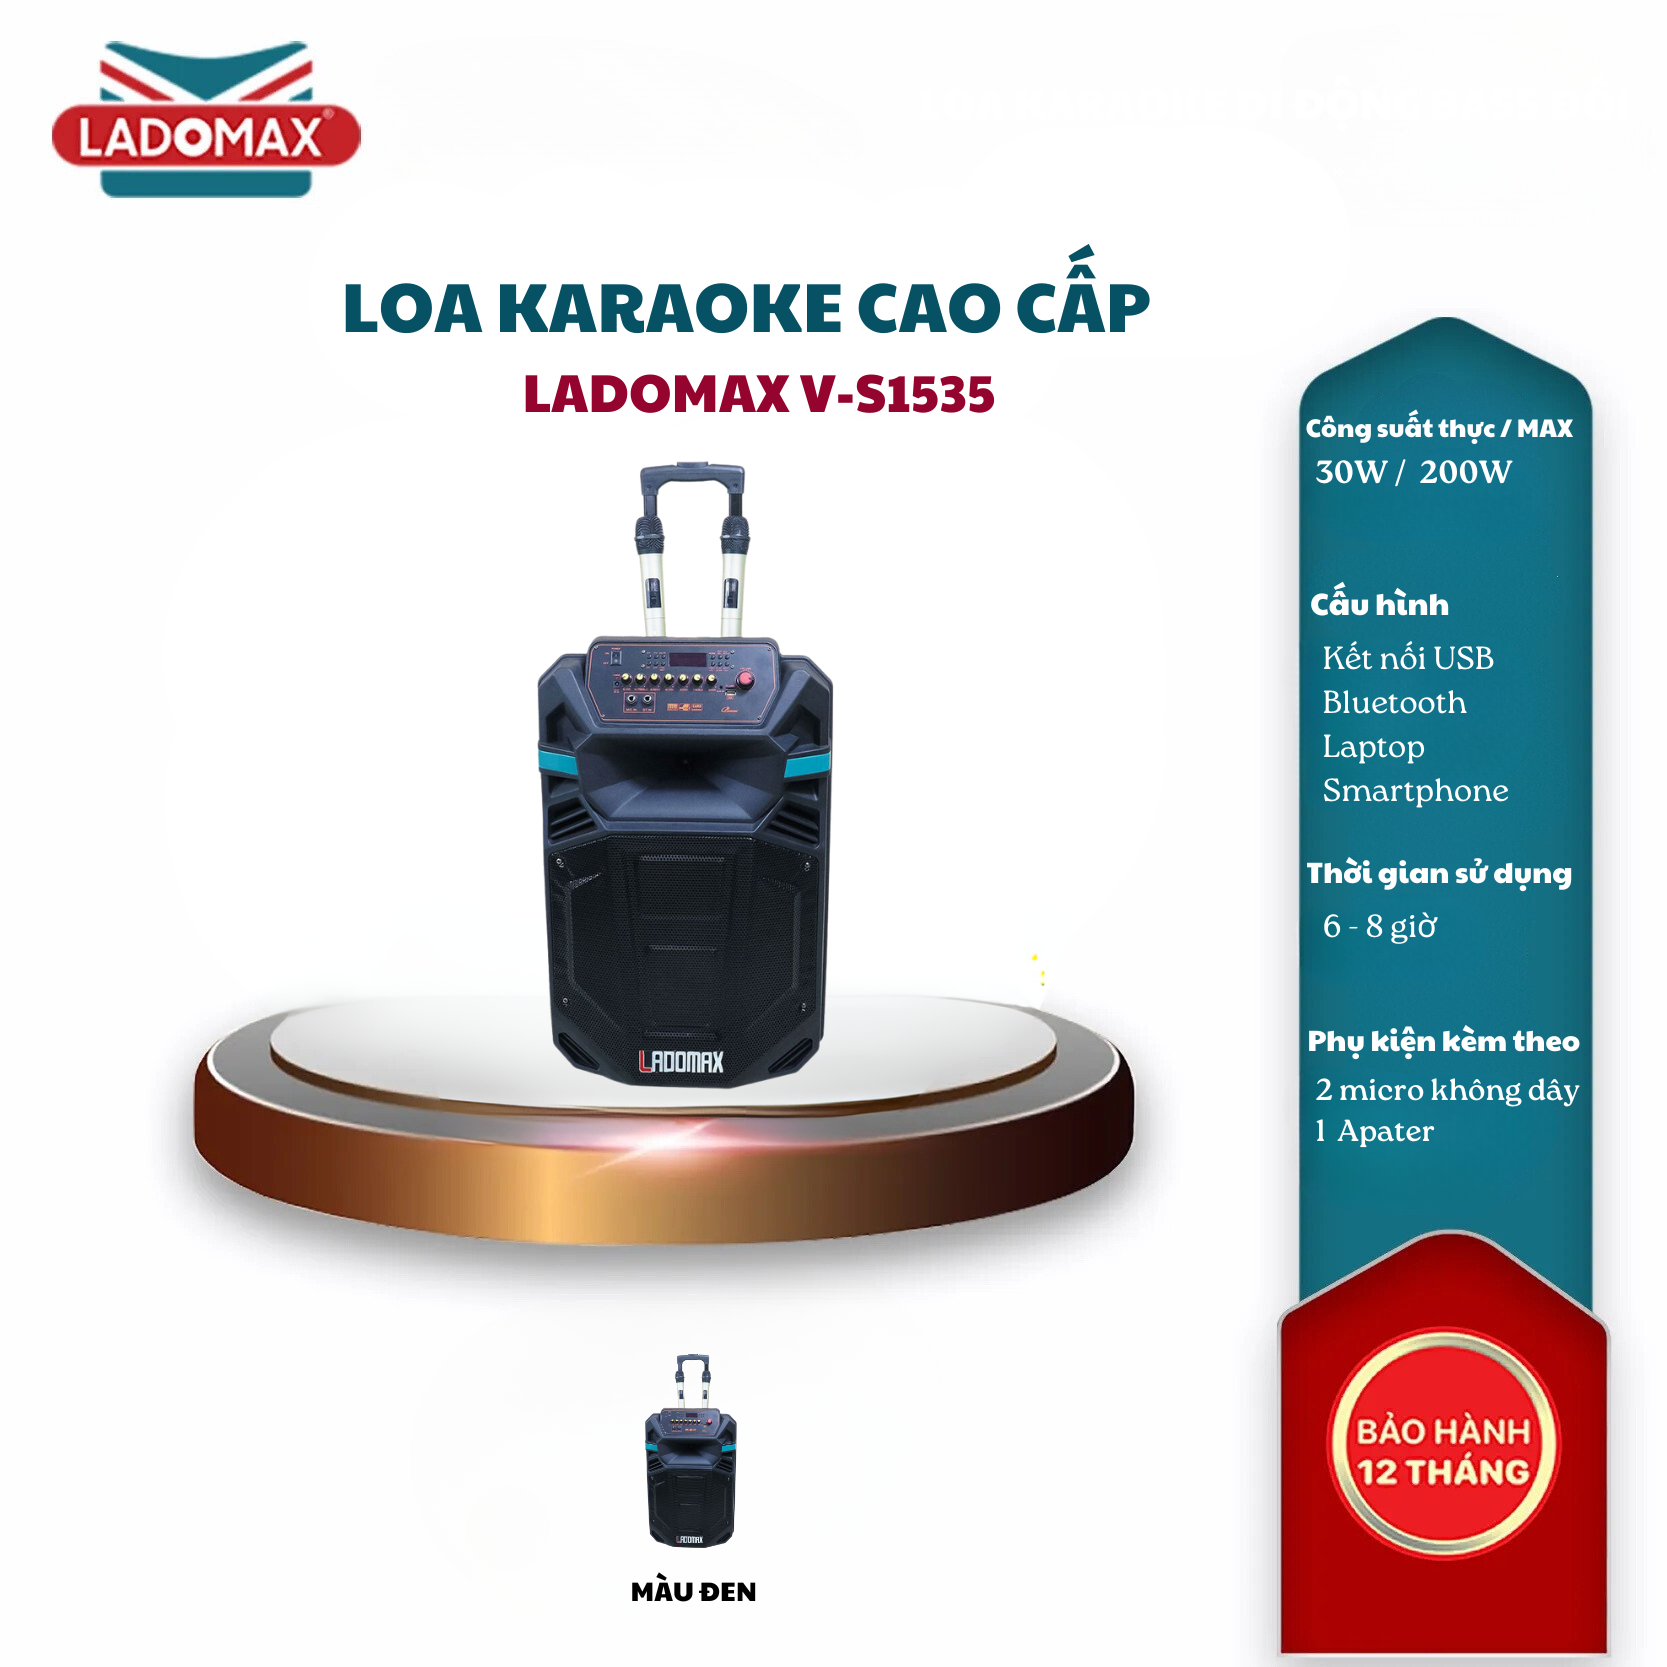 Loa kéo karaoke 4 tấc Ladomax V-S1535